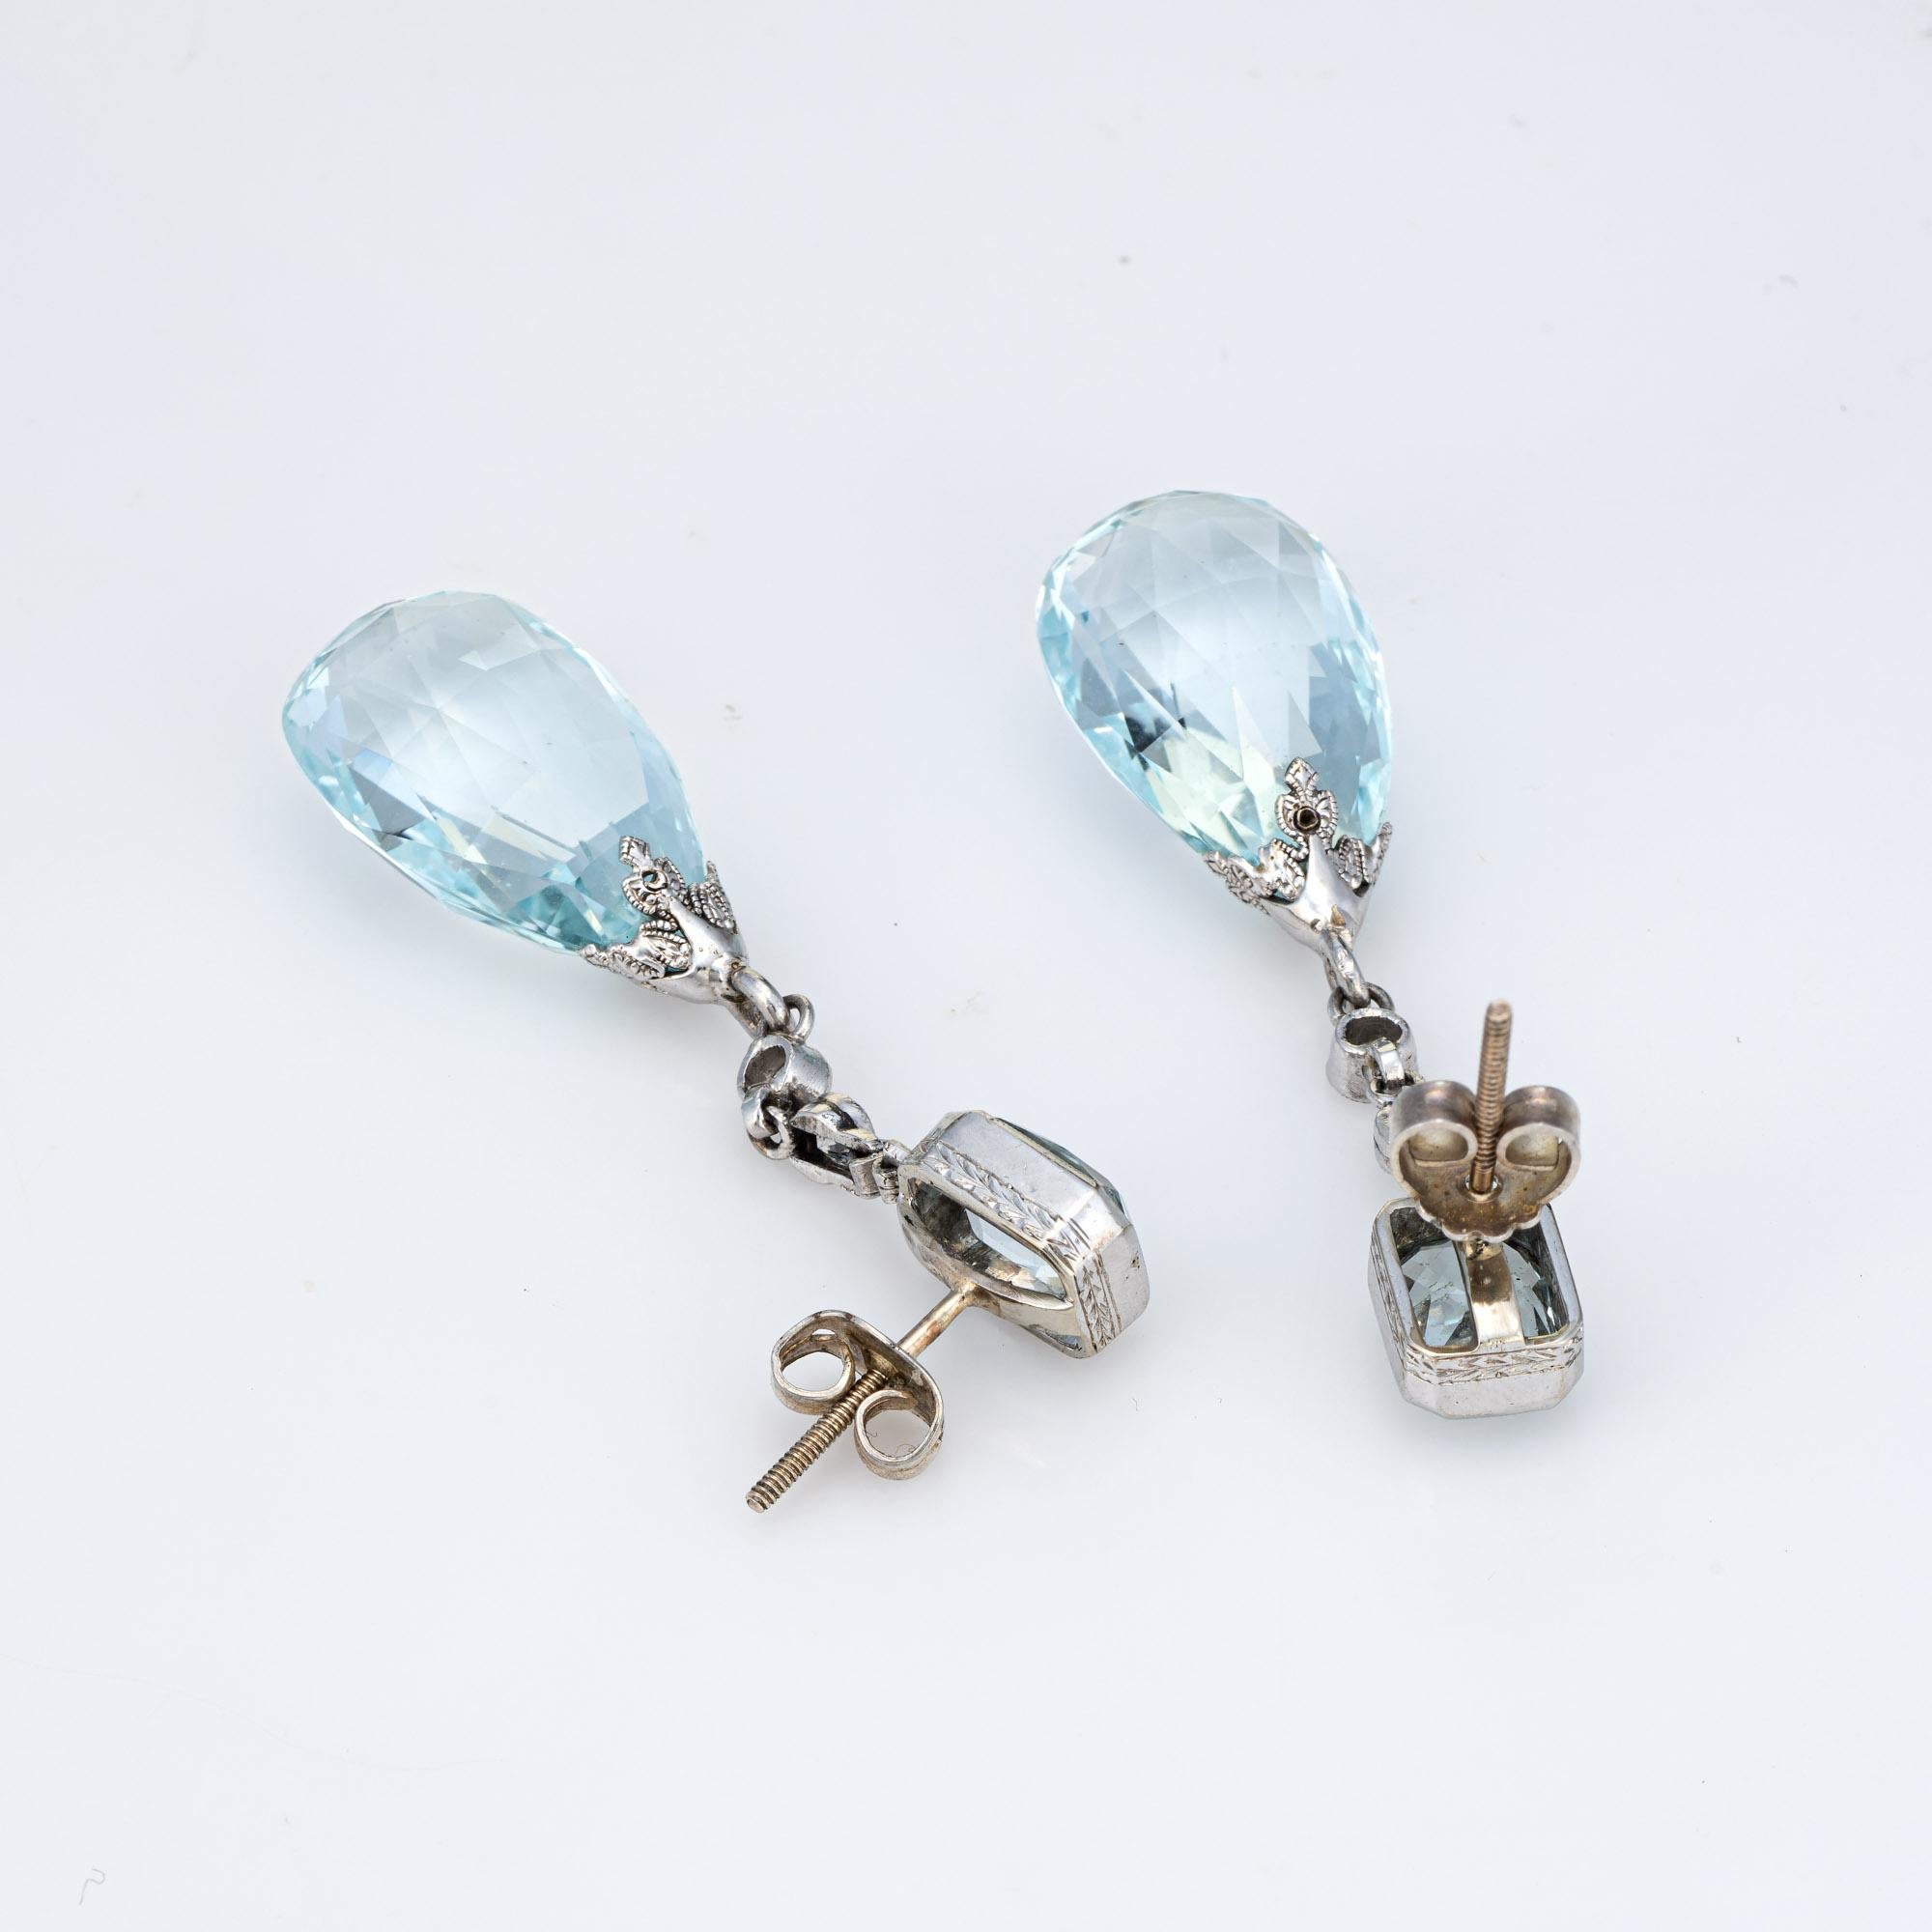 Elegant pair of vintage Art Deco era aquamarine & diamond earrings (circa 1920s to 1930s) crafted in 900 platinum. 

Briolette faceted aquamarines measure 18mm x 12mm (lower) and square cushion cut aquamarines measure 7mm x 5mm. Four old European